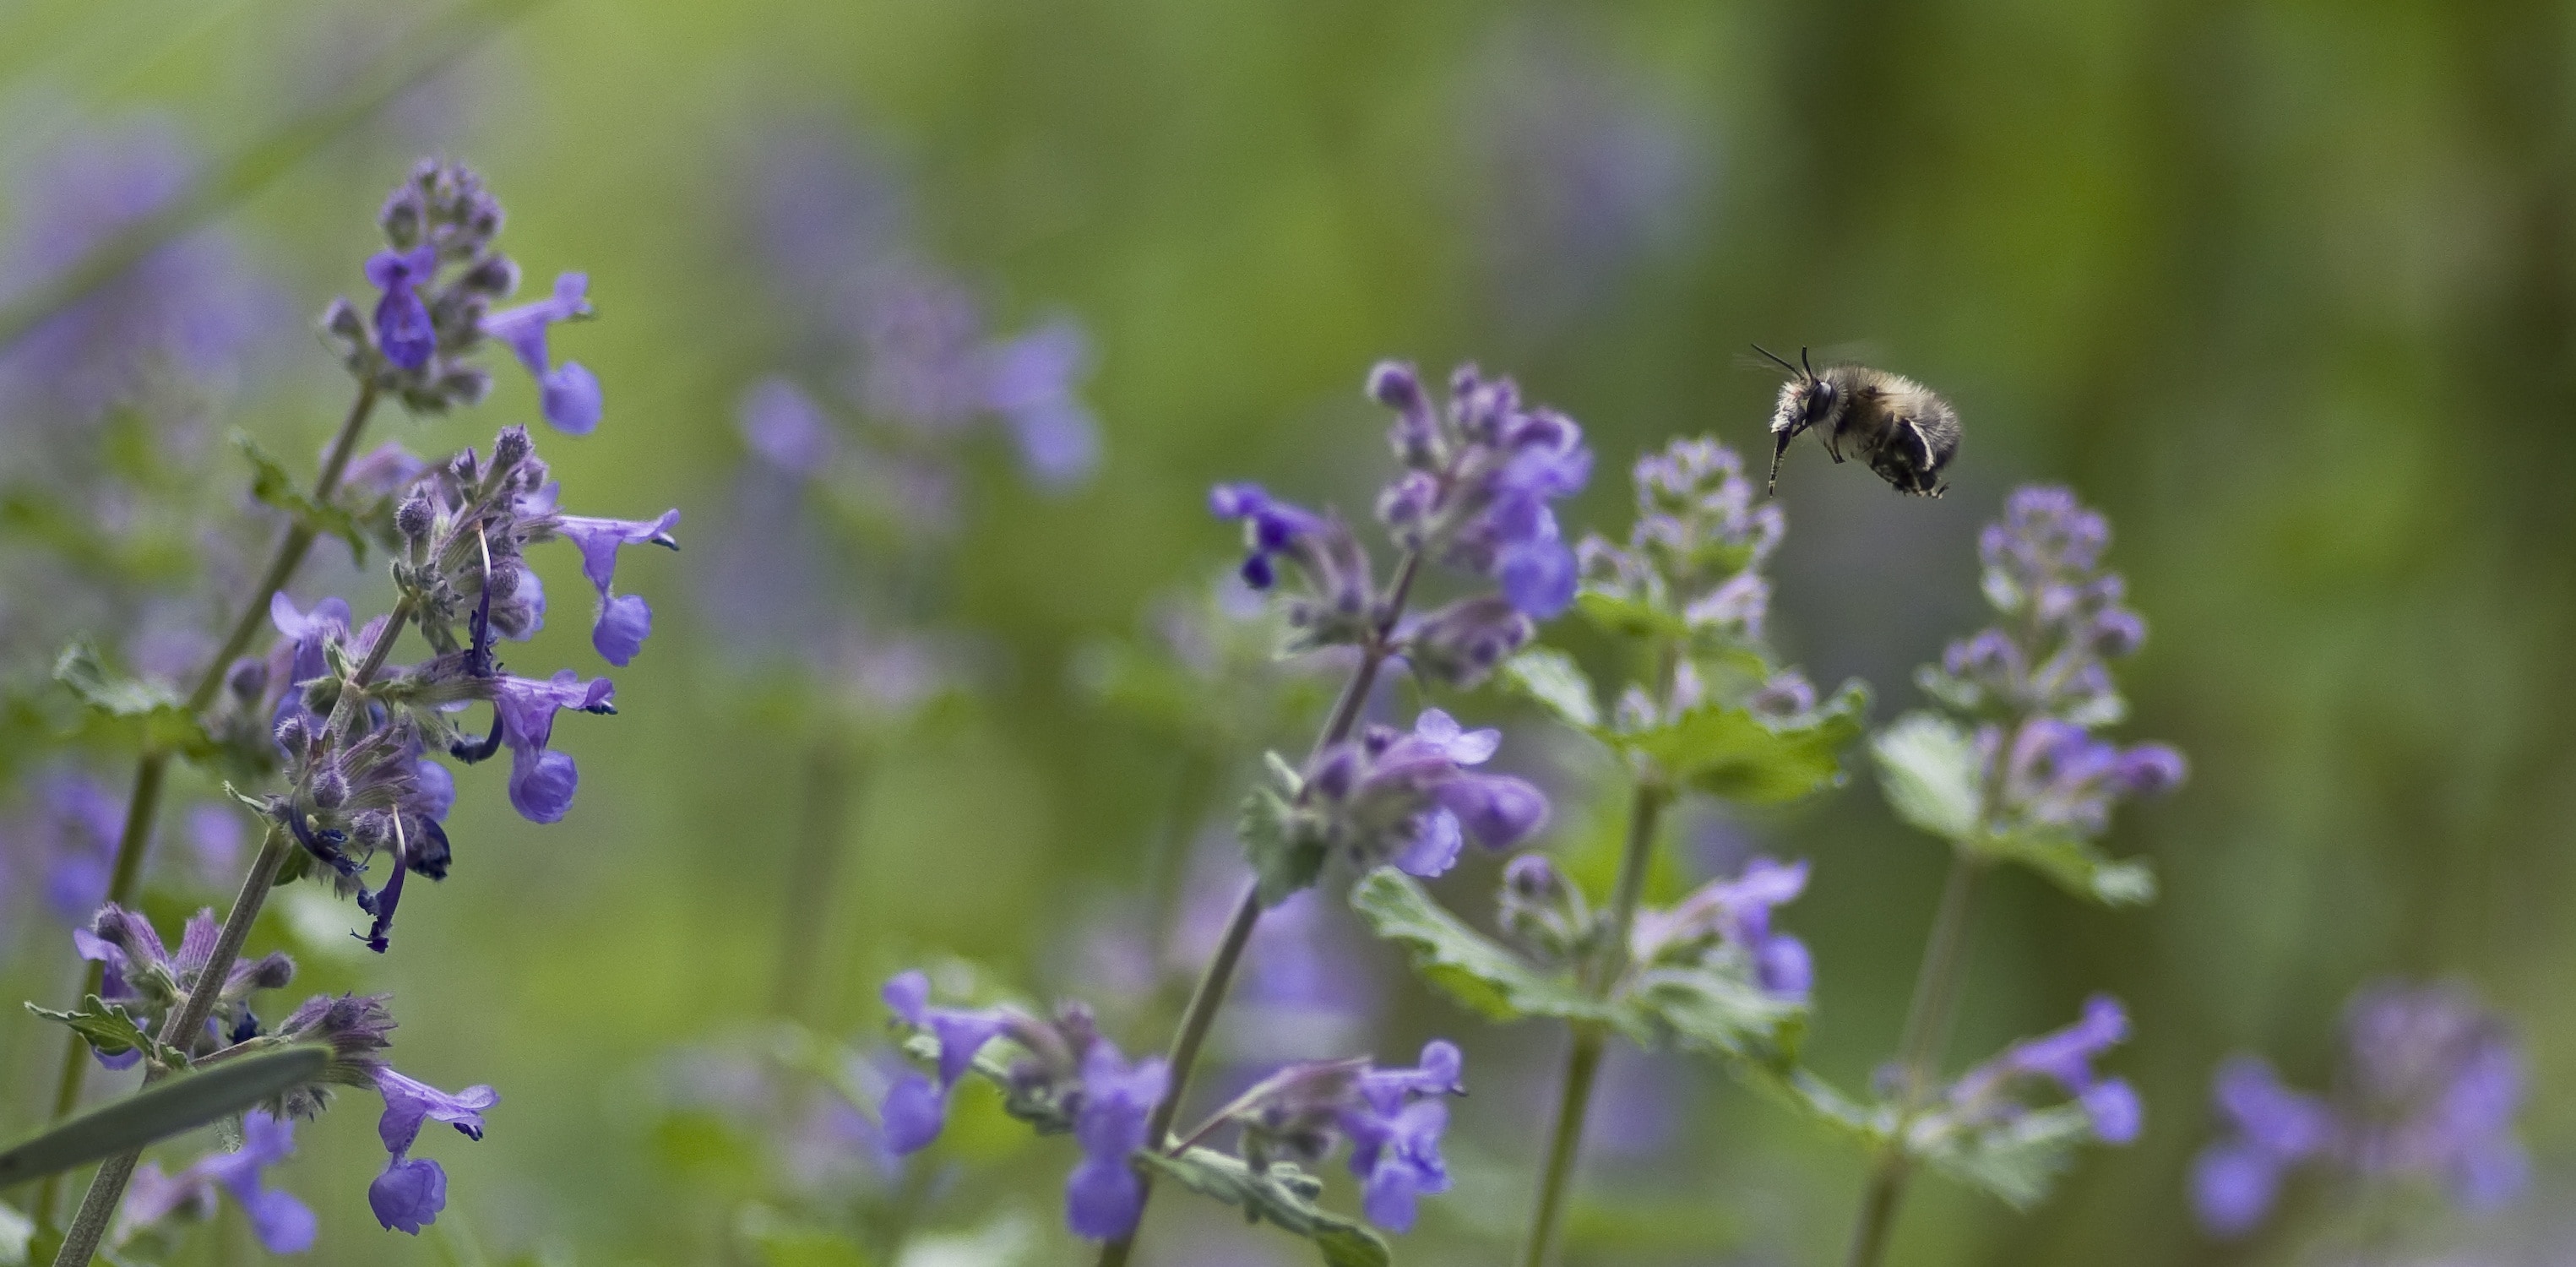 honeybee flying above purple flowers